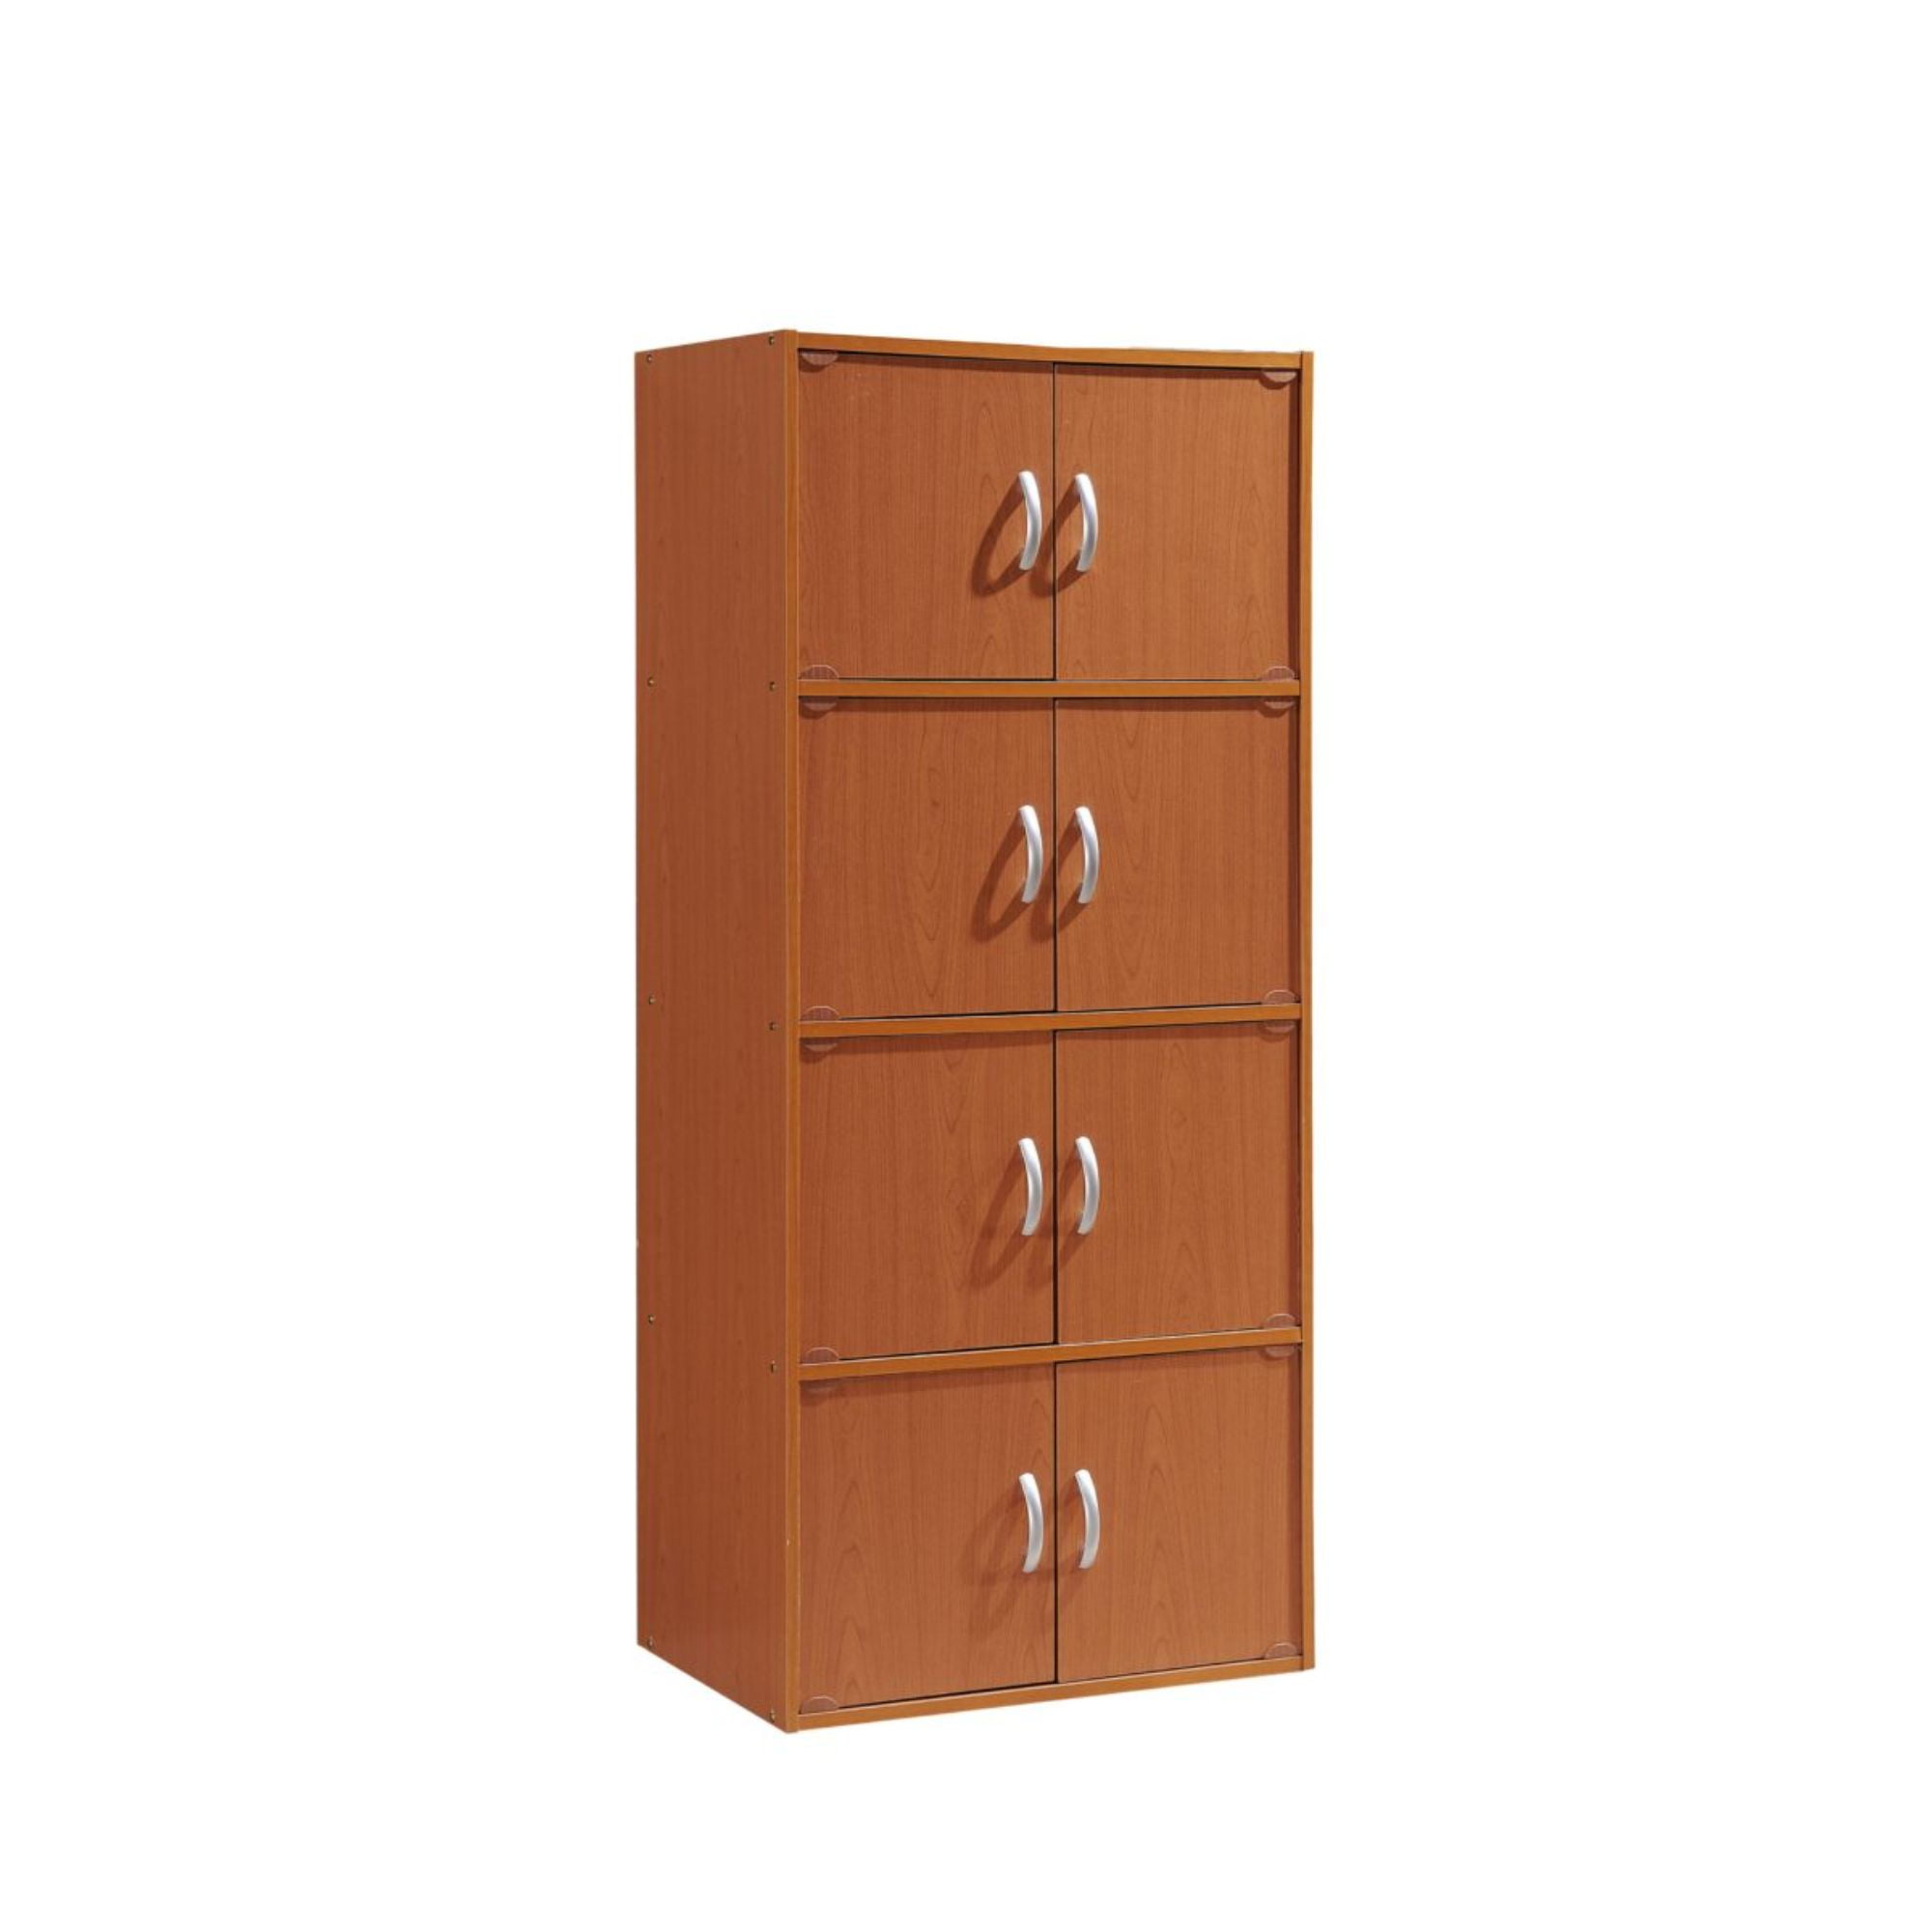 Details about   3 Door Storage Cabinet Shelf Organizer Bookcase Pantry Cupboard Closet Black 